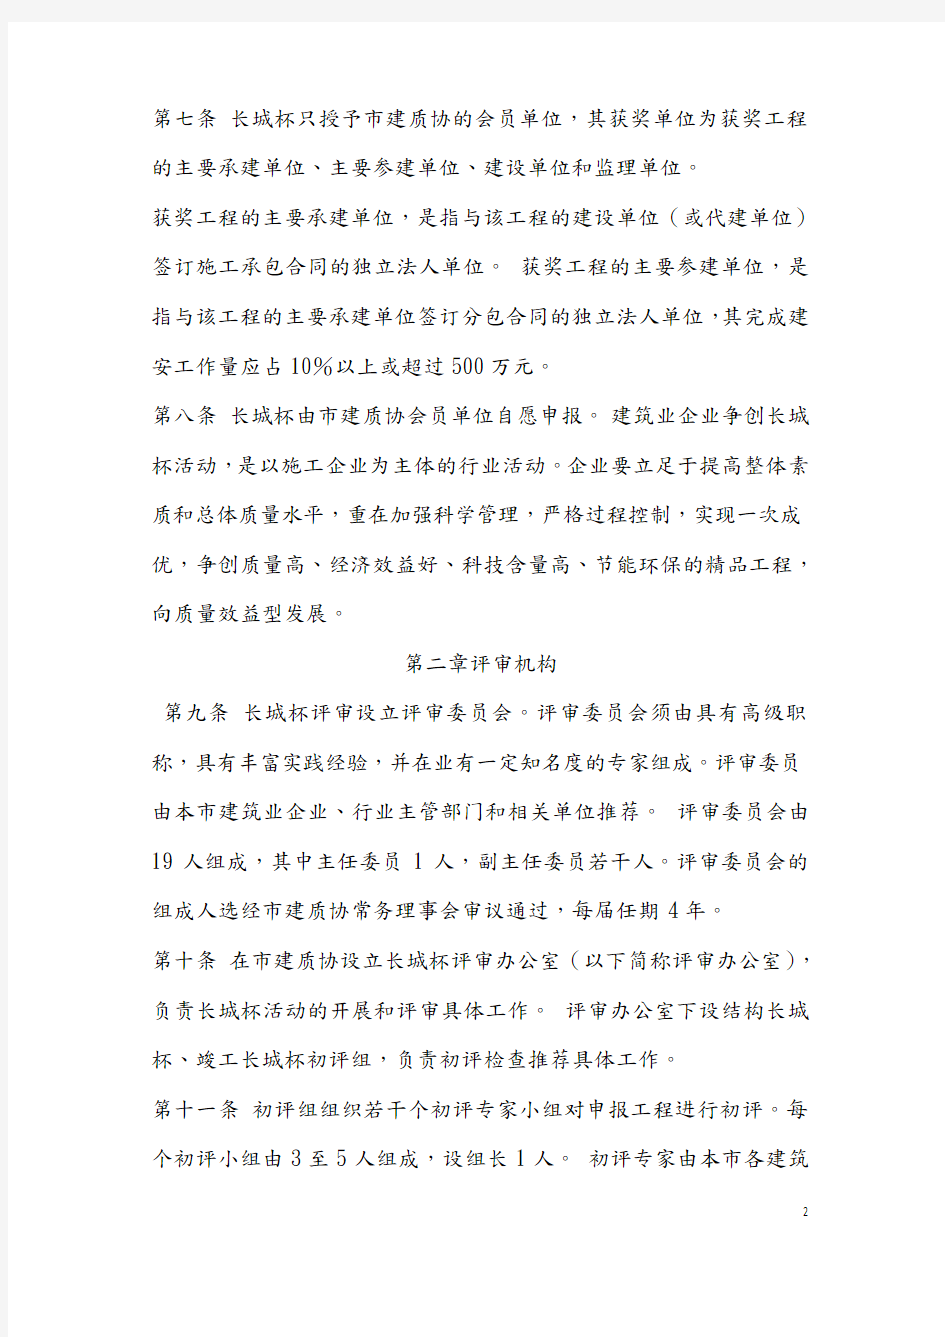 北京市建筑工程长城杯评审管理办法